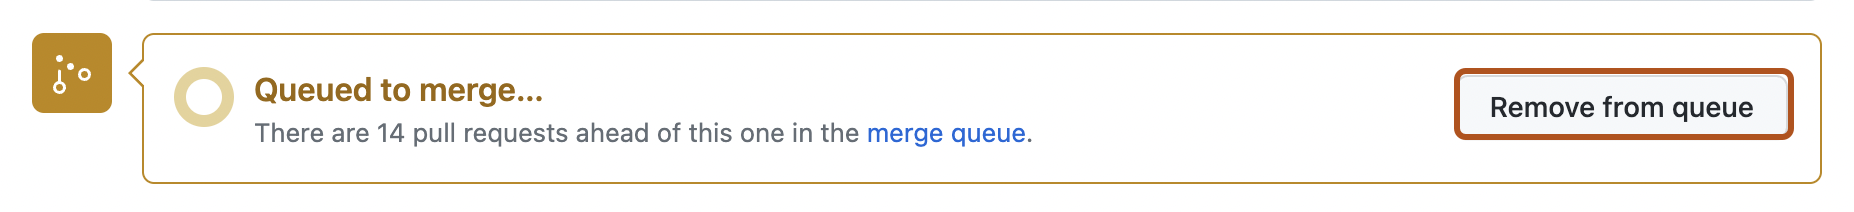 Captura de tela da mensagem de fila de mesclagem no final de uma solicitação de pull. O botão "Remover da fila" está contornado em laranja escuro.